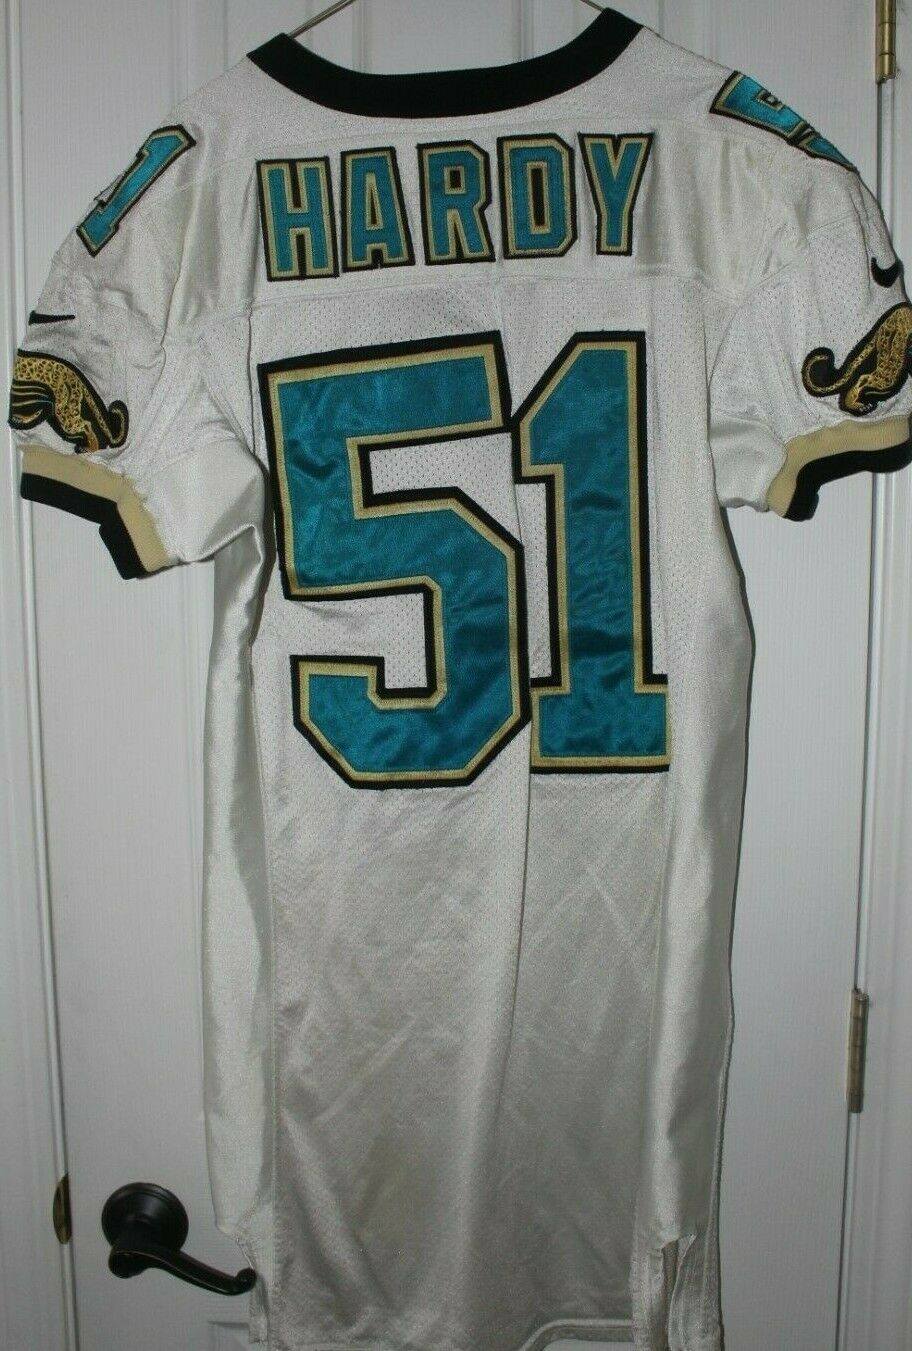 1996-97 Kevin Hardy Jacksonville Jaguars Game Used Rookie Football